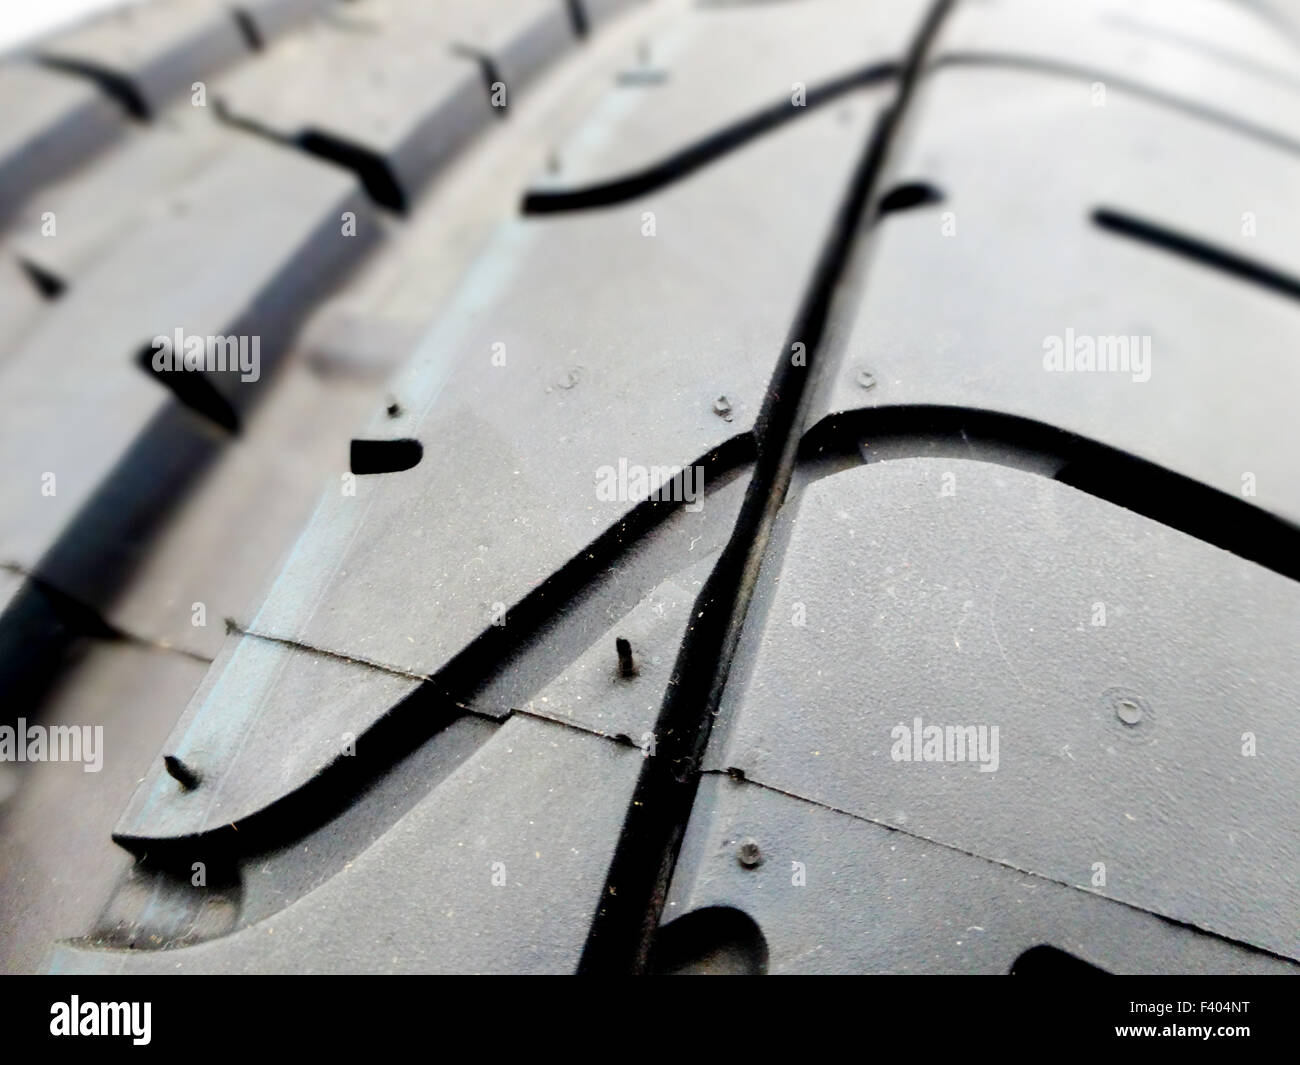 Battistrada del pneumatico closeup in un pneumatico Negozio Foto Stock